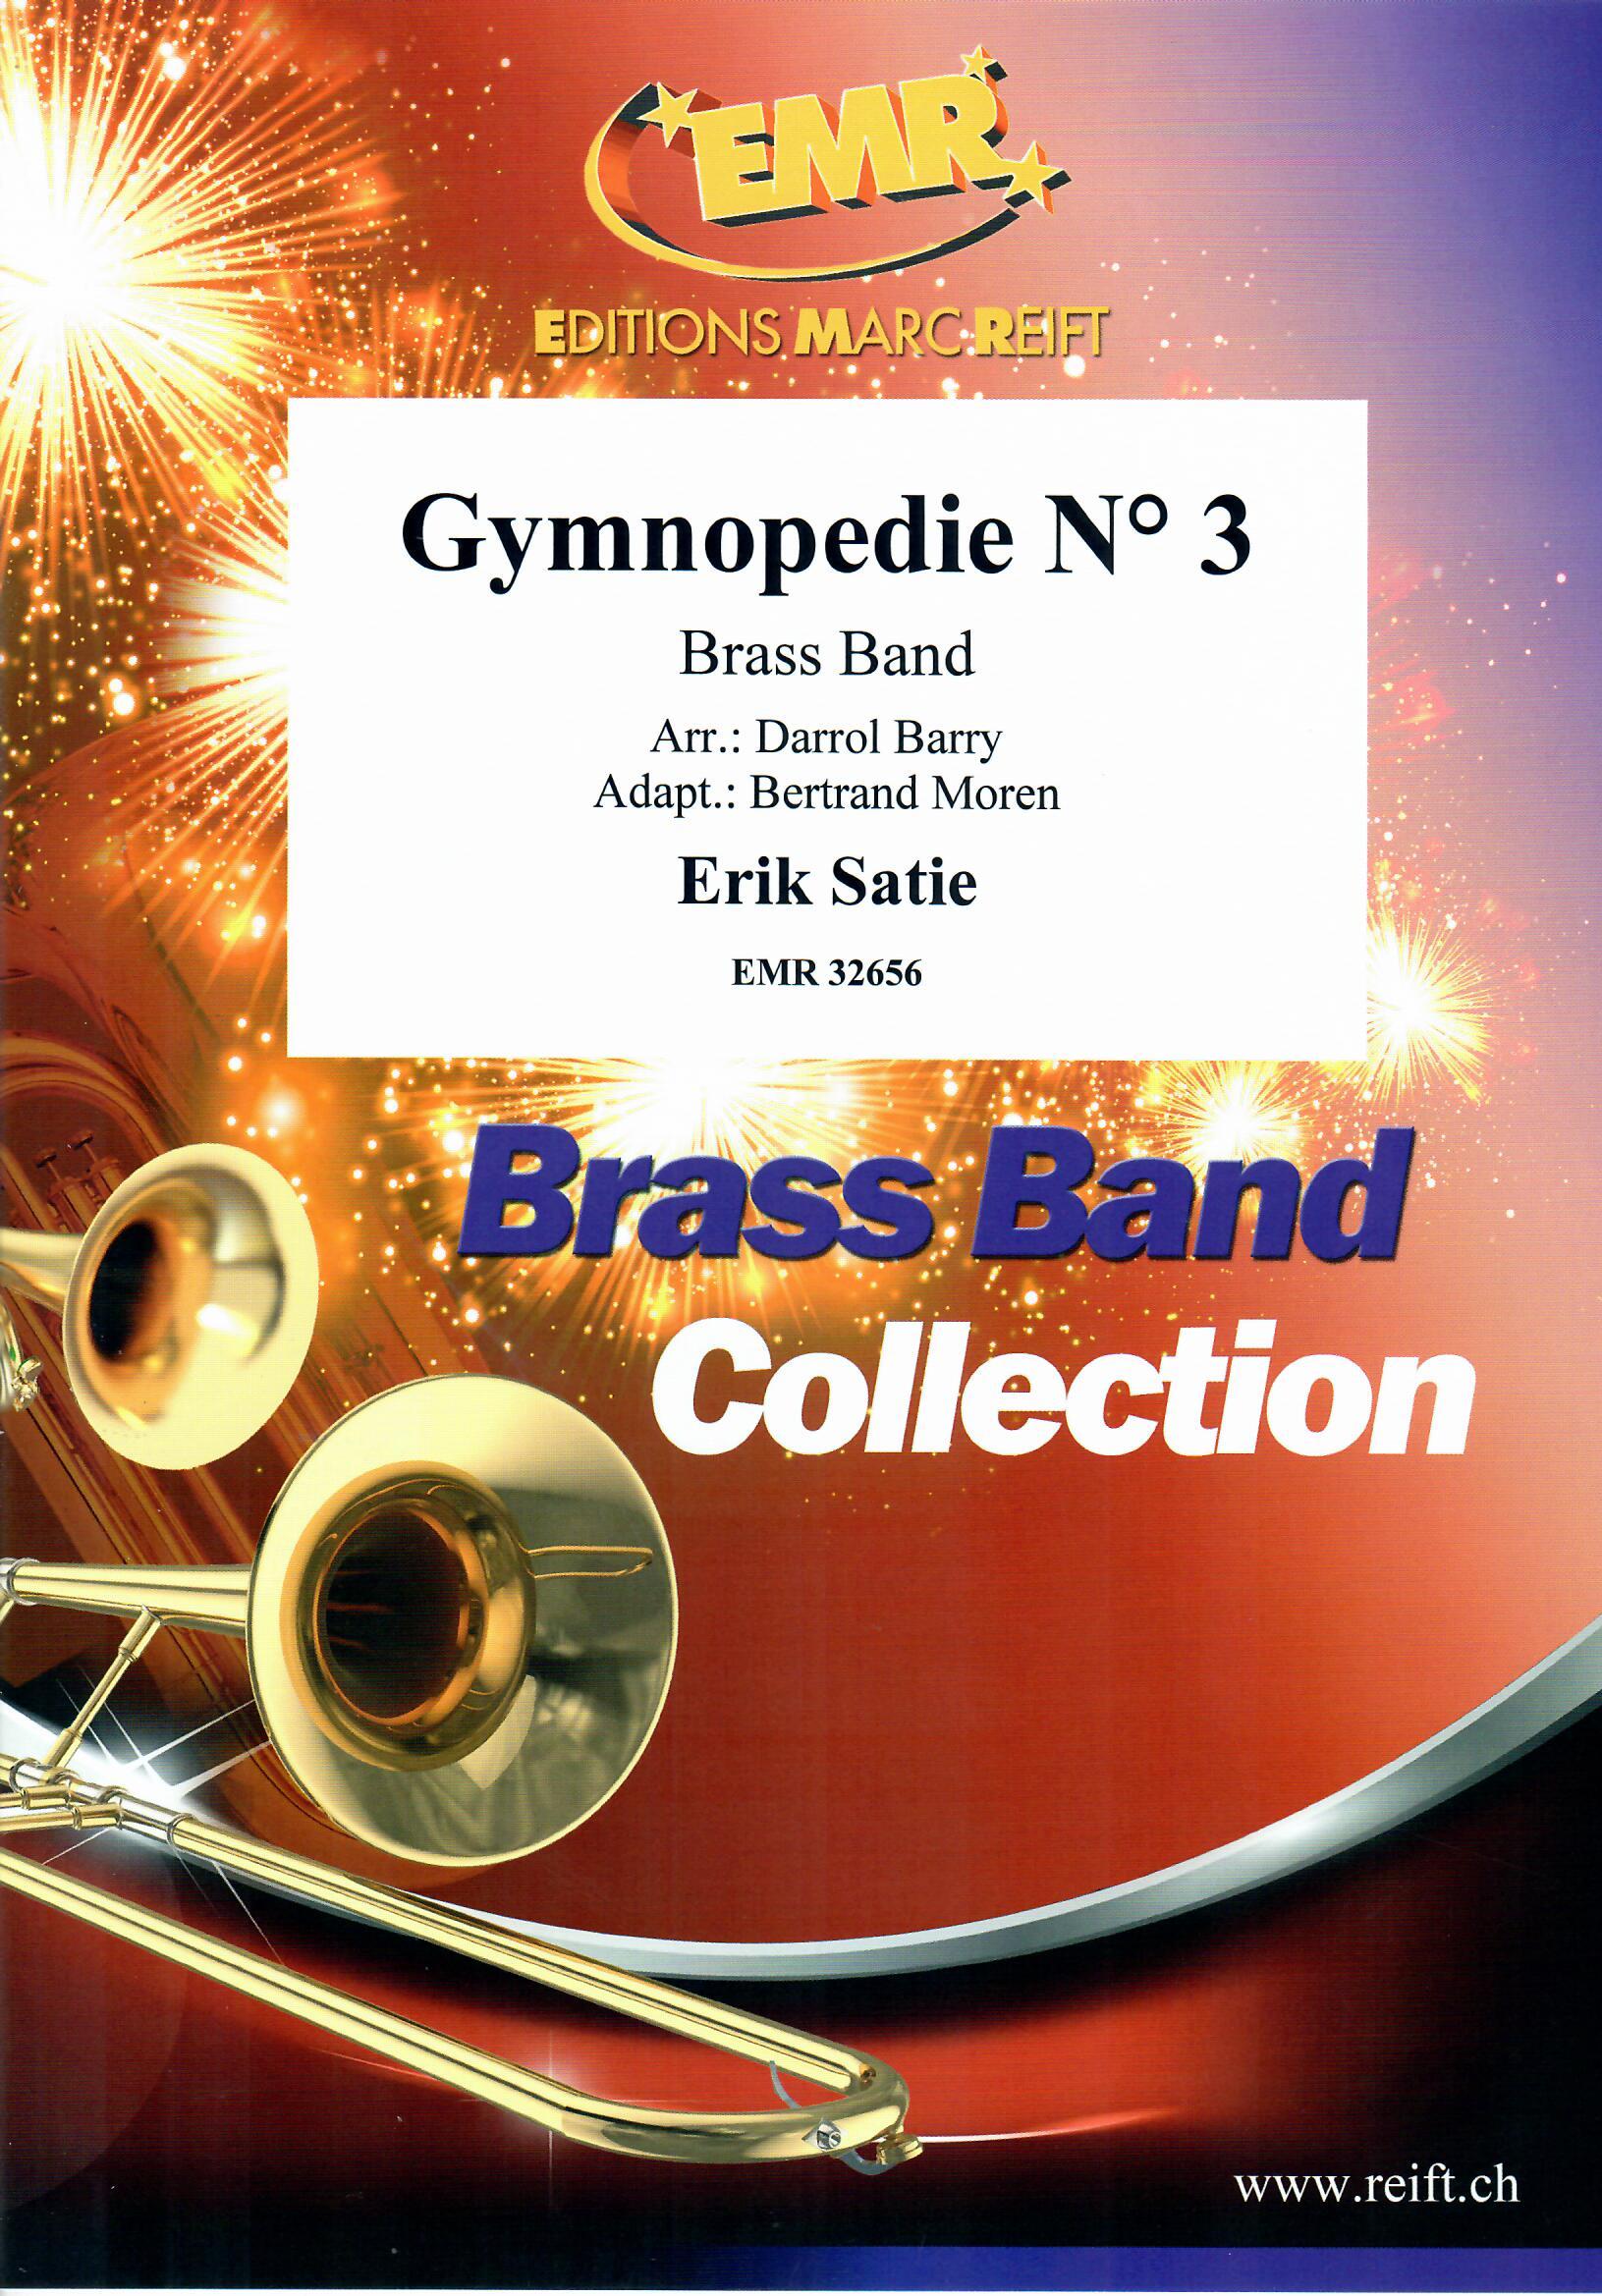 GYMNOPEDIE N° 3 - Parts & Score, LIGHT CONCERT MUSIC